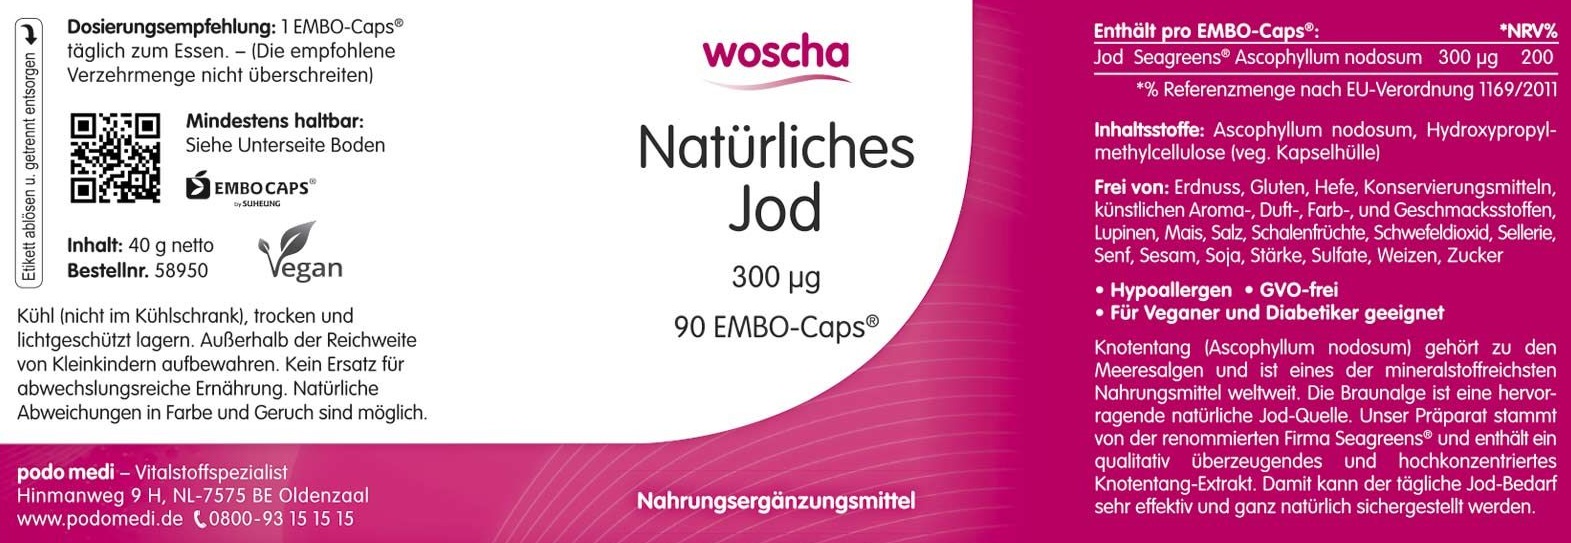 Woscha Natürliches Jod von podo medi beinhaltet 90 Kapseln Etikett